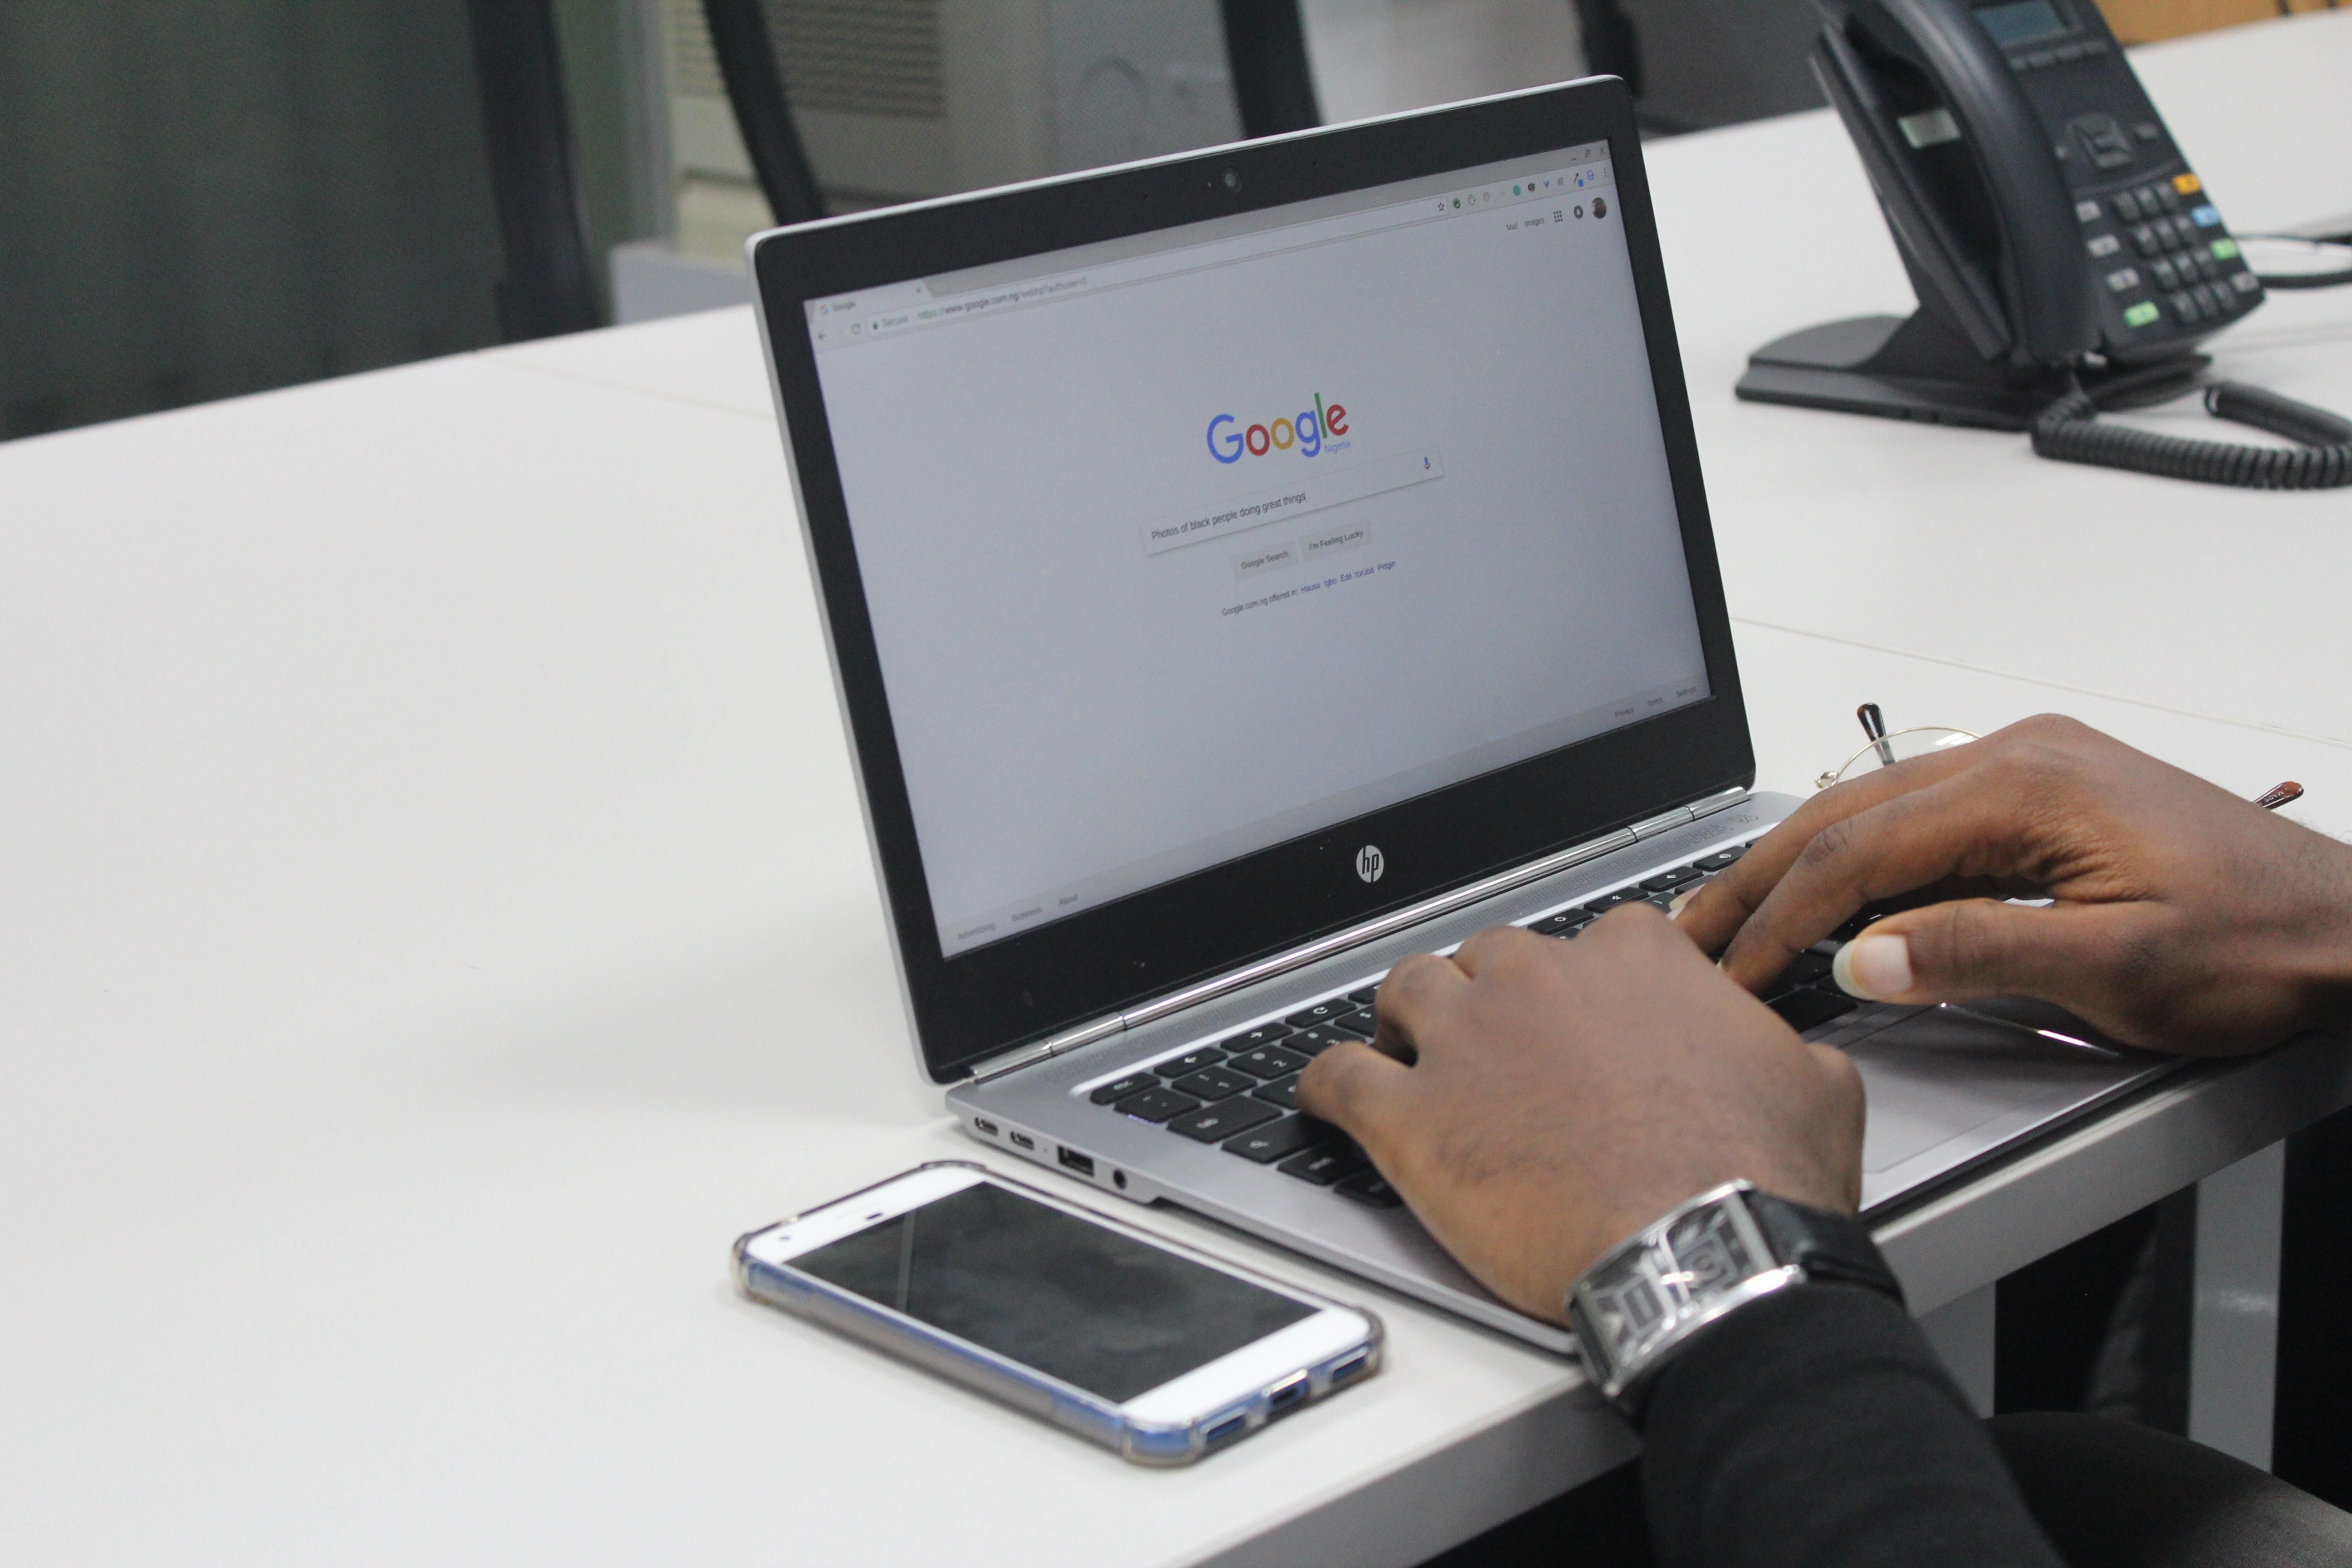 Скрытая опасность: Google Chrome следит даже за анонимными пользователями